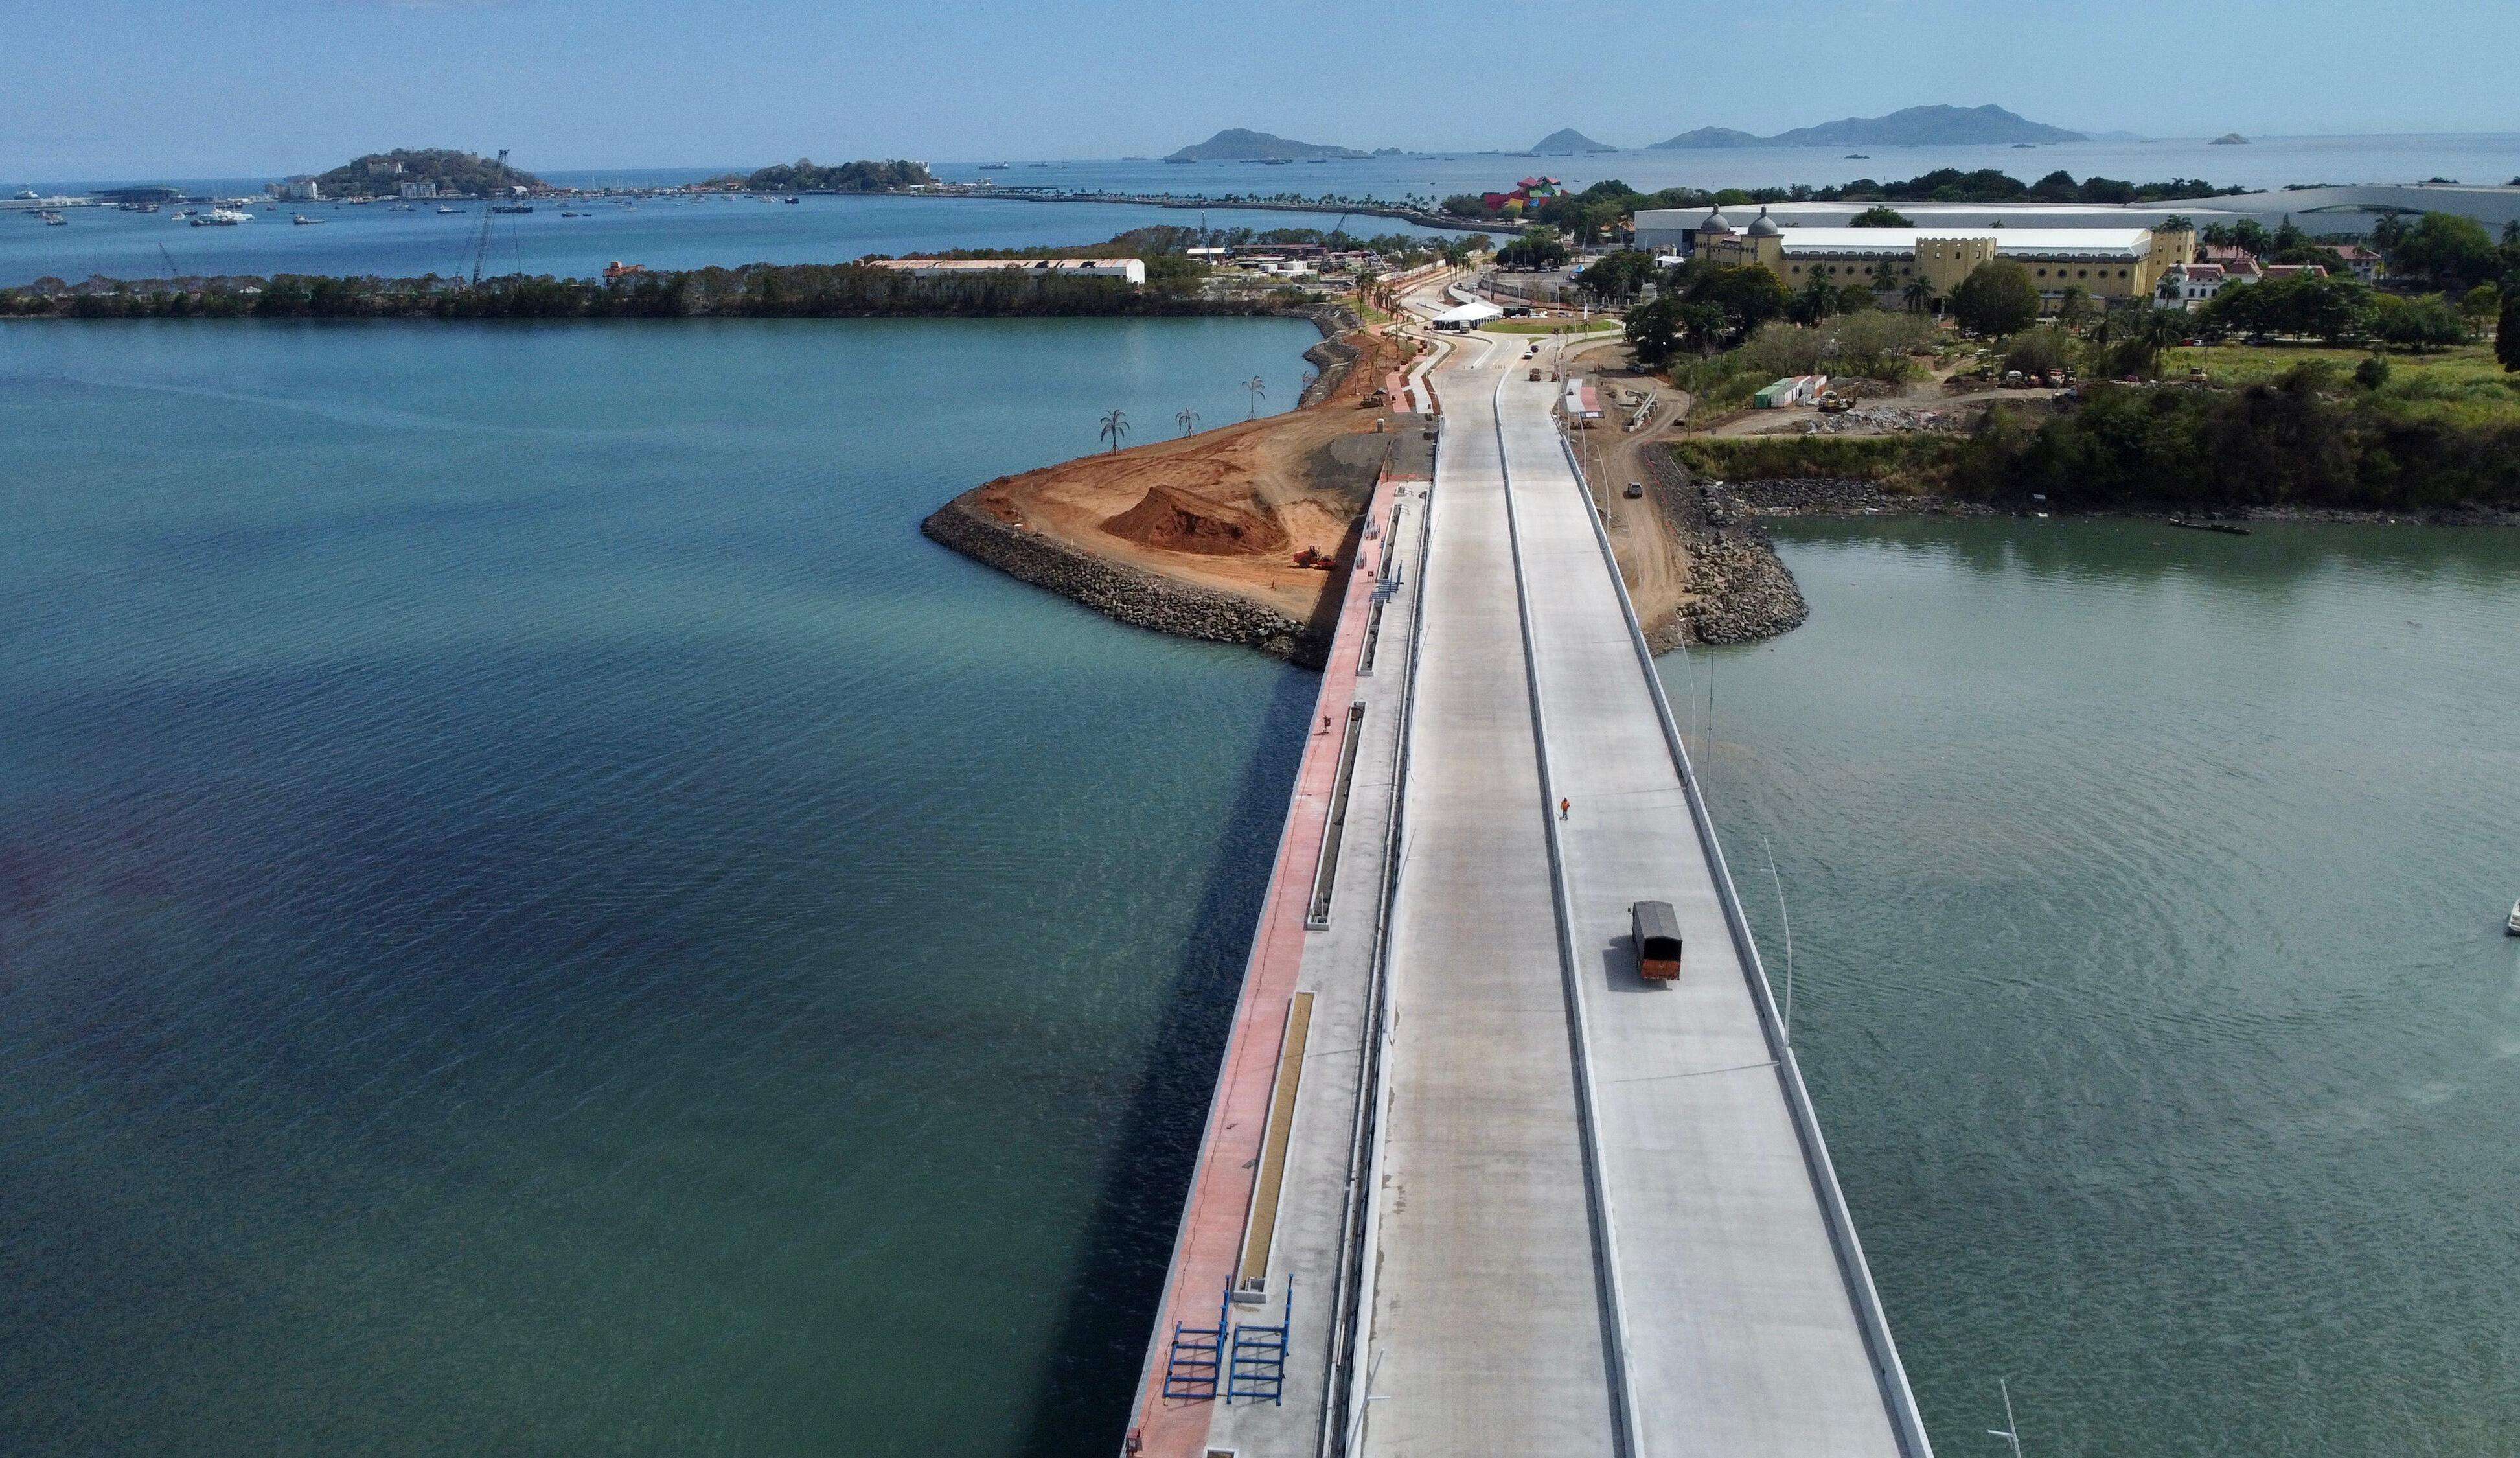 El viaducto, de 1.56 kilómetros de longitud, mejorará la fluidez del tráfico vehicular.